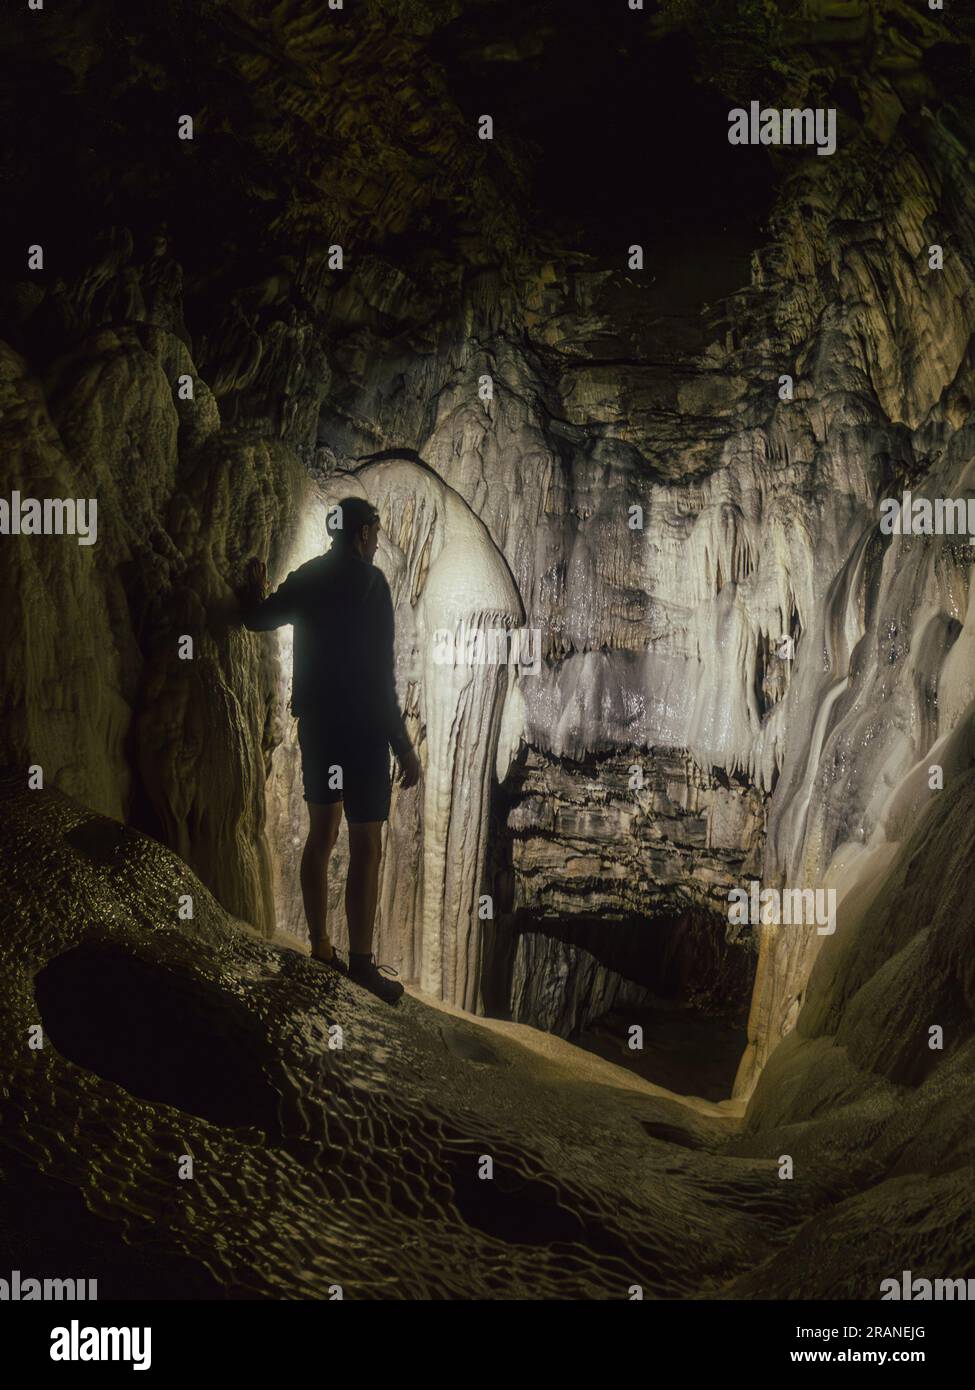 Uomo che esplora la misteriosa e naturale bellezza della Spar Cave sull'isola di Skye, in Scozia, in un affascinante viaggio sotterraneo Foto Stock